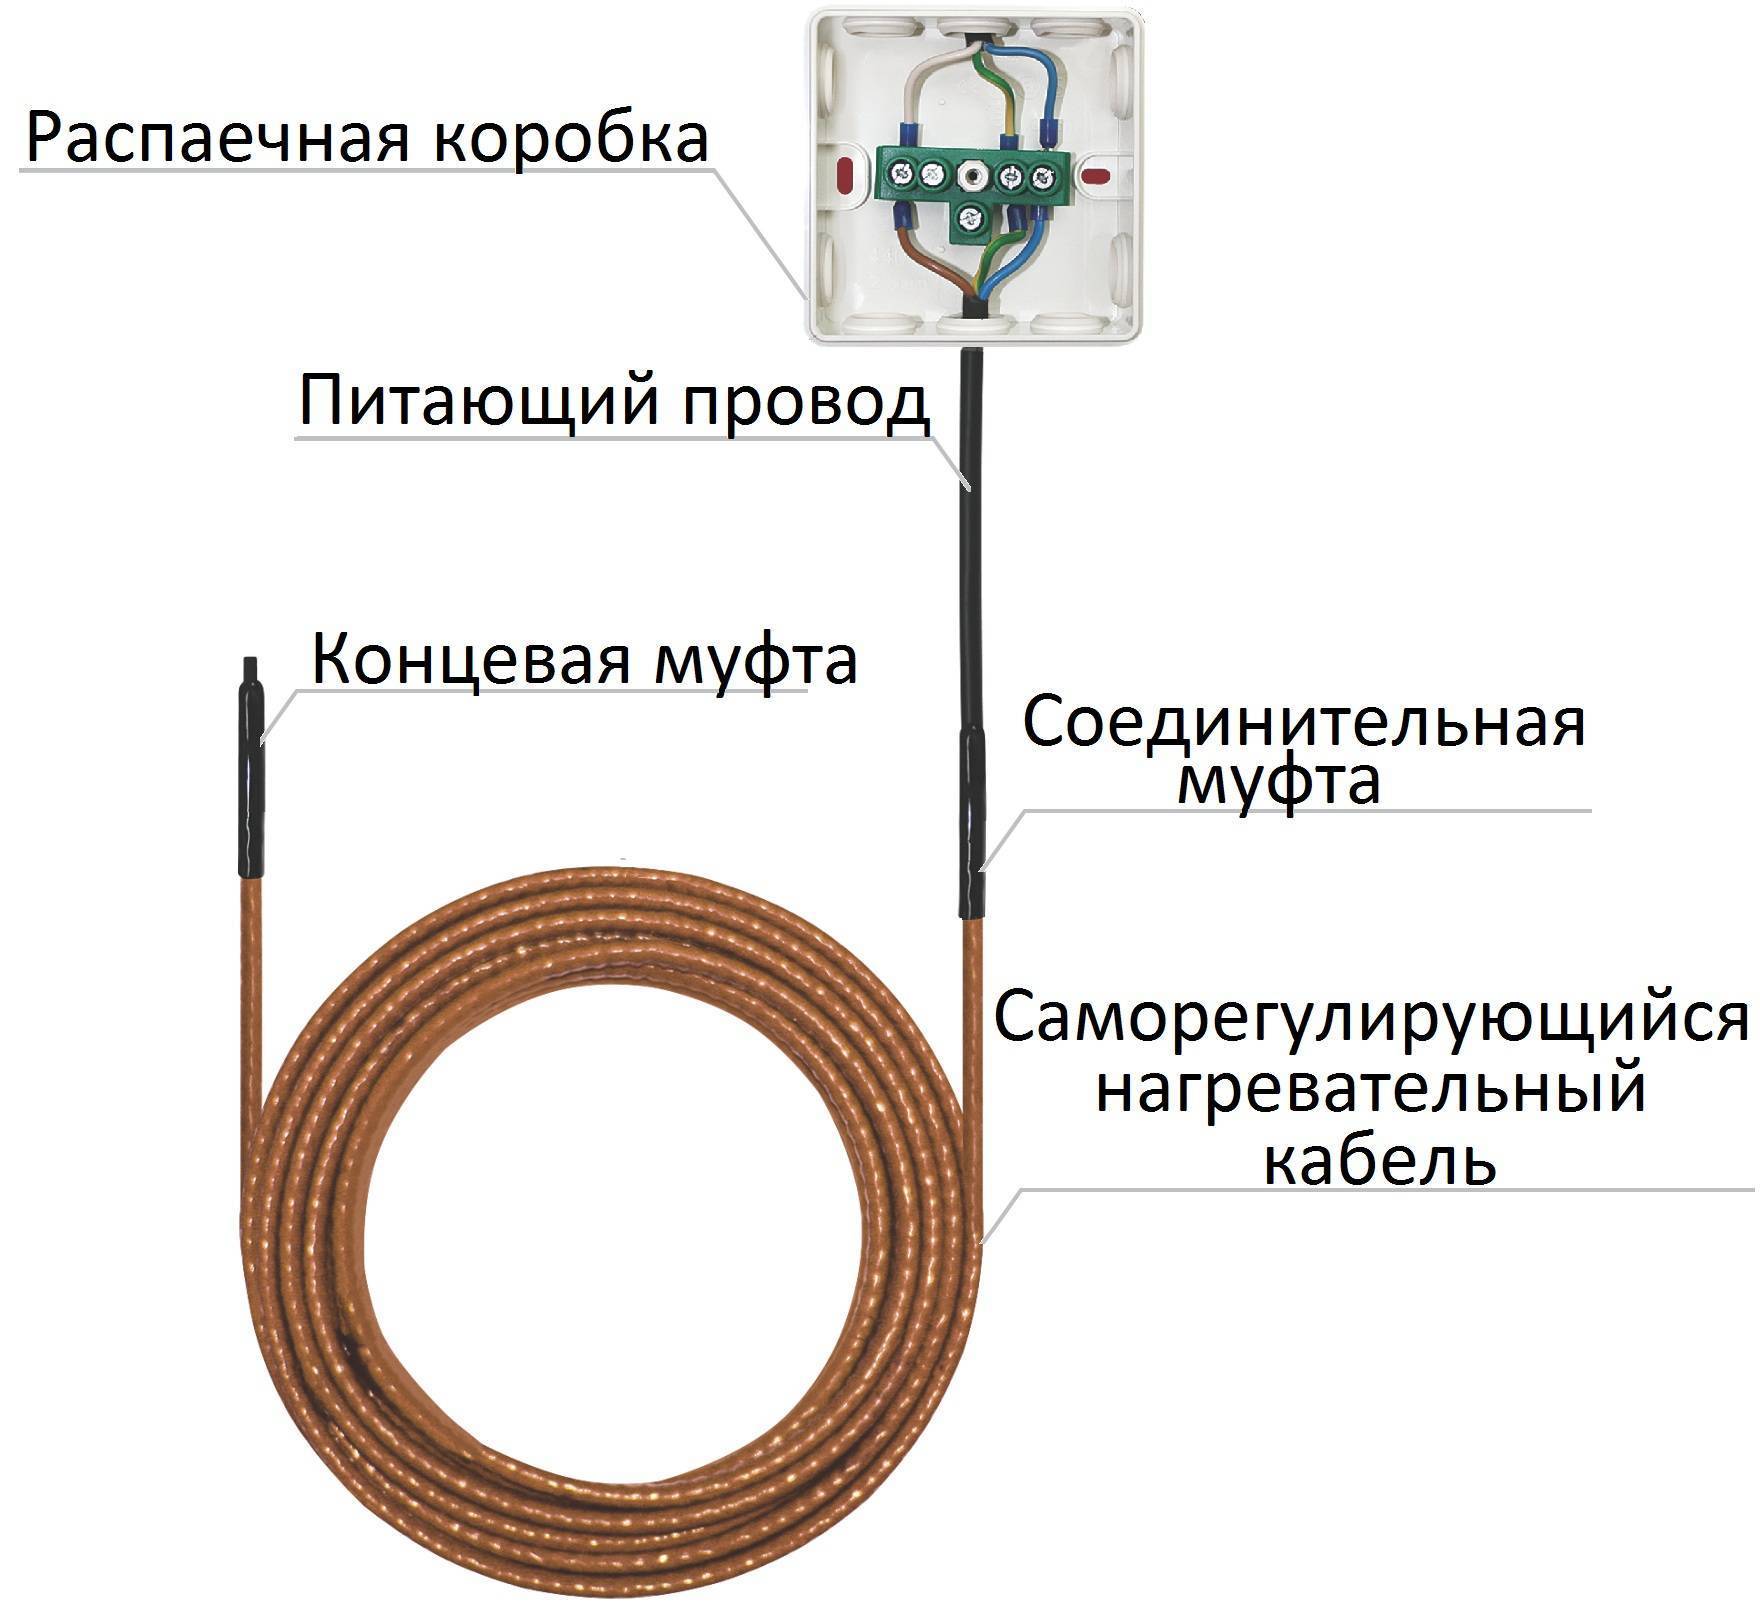 Выбираем греющий кабель для водопровода и монтируем по инструкции своими руками